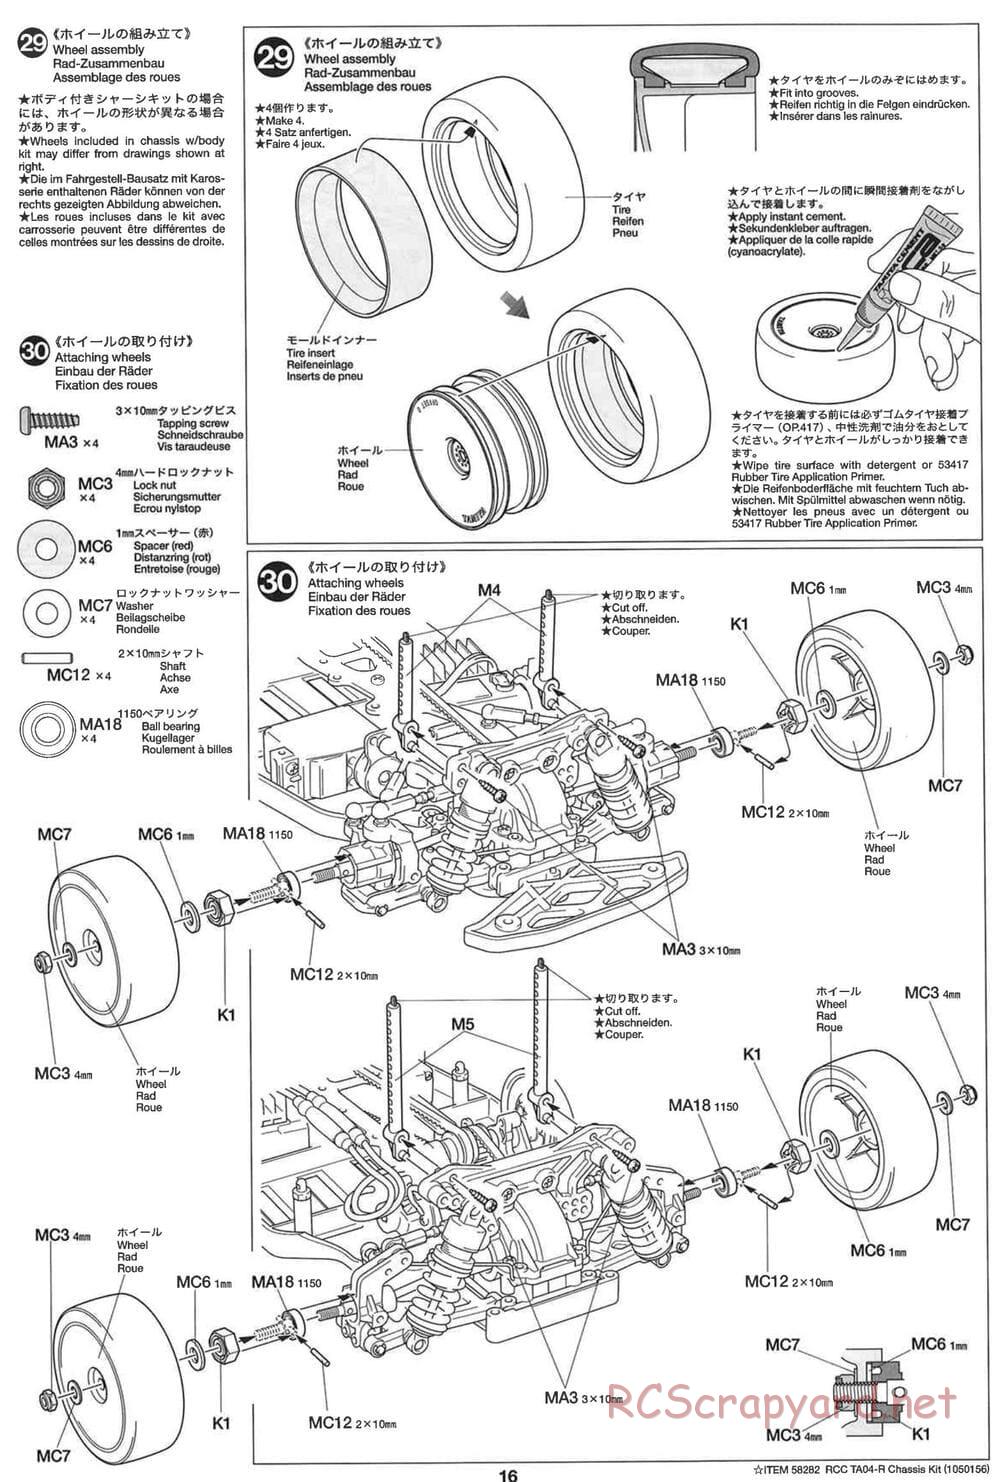 Tamiya - TA-04R Chassis - Manual - Page 16